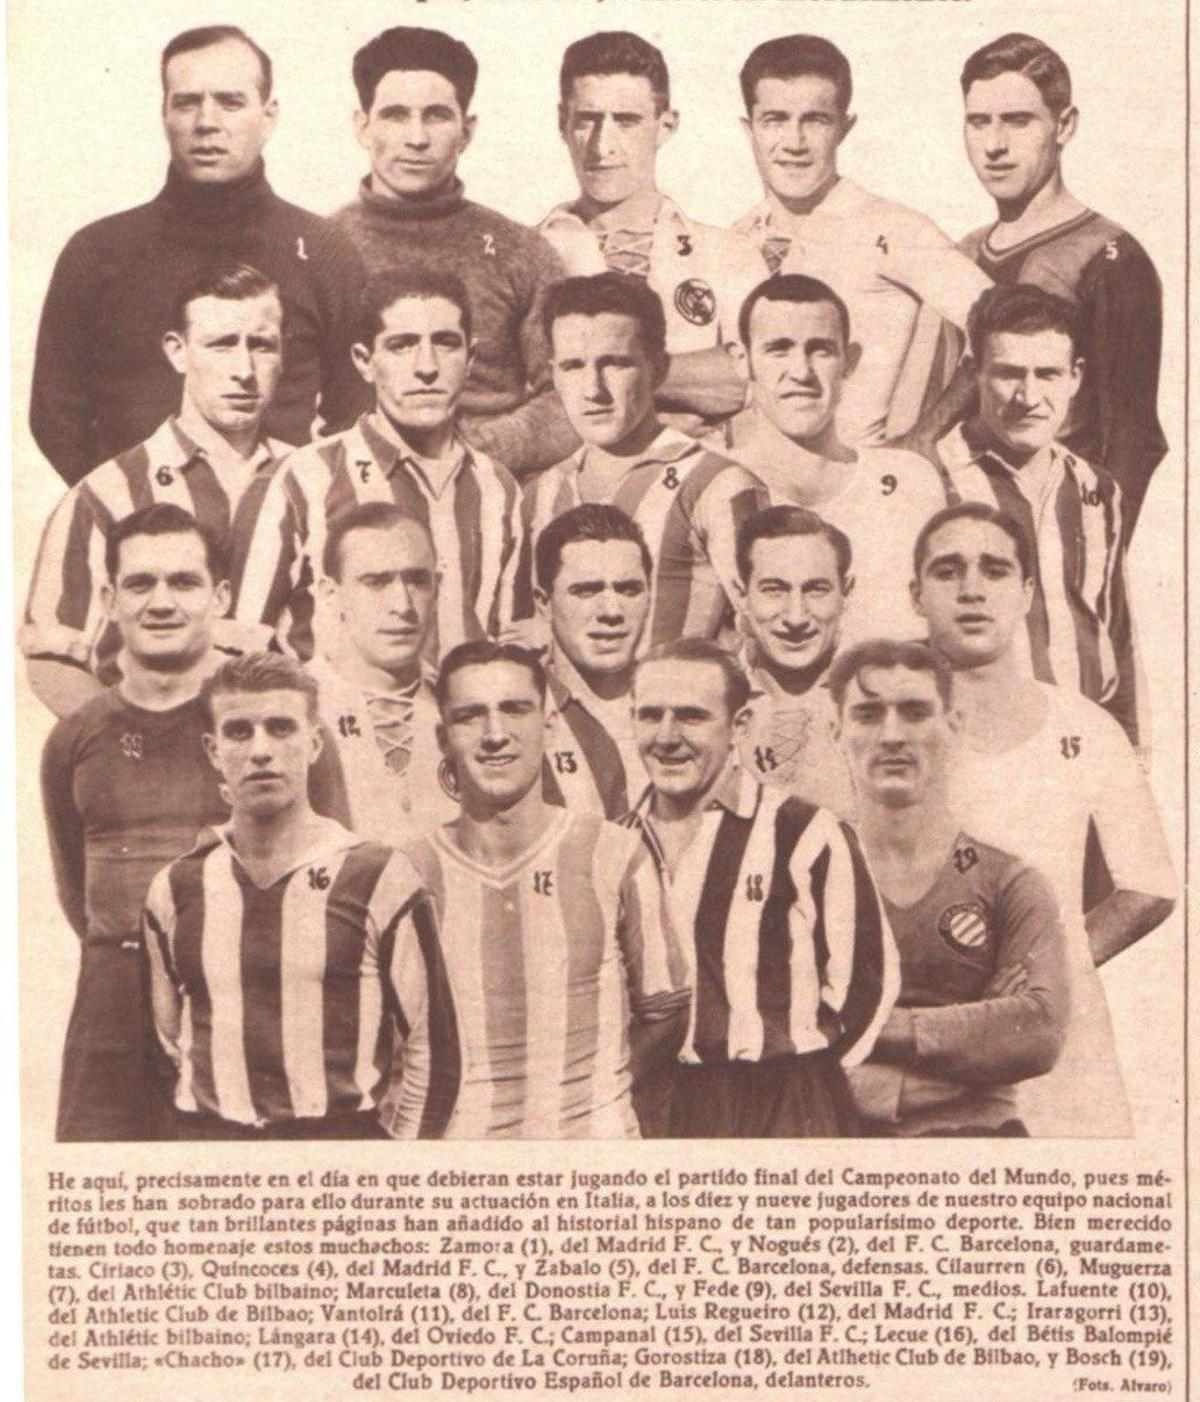 La selección española de fútbol de 1934 de La Batalla de Florencia.